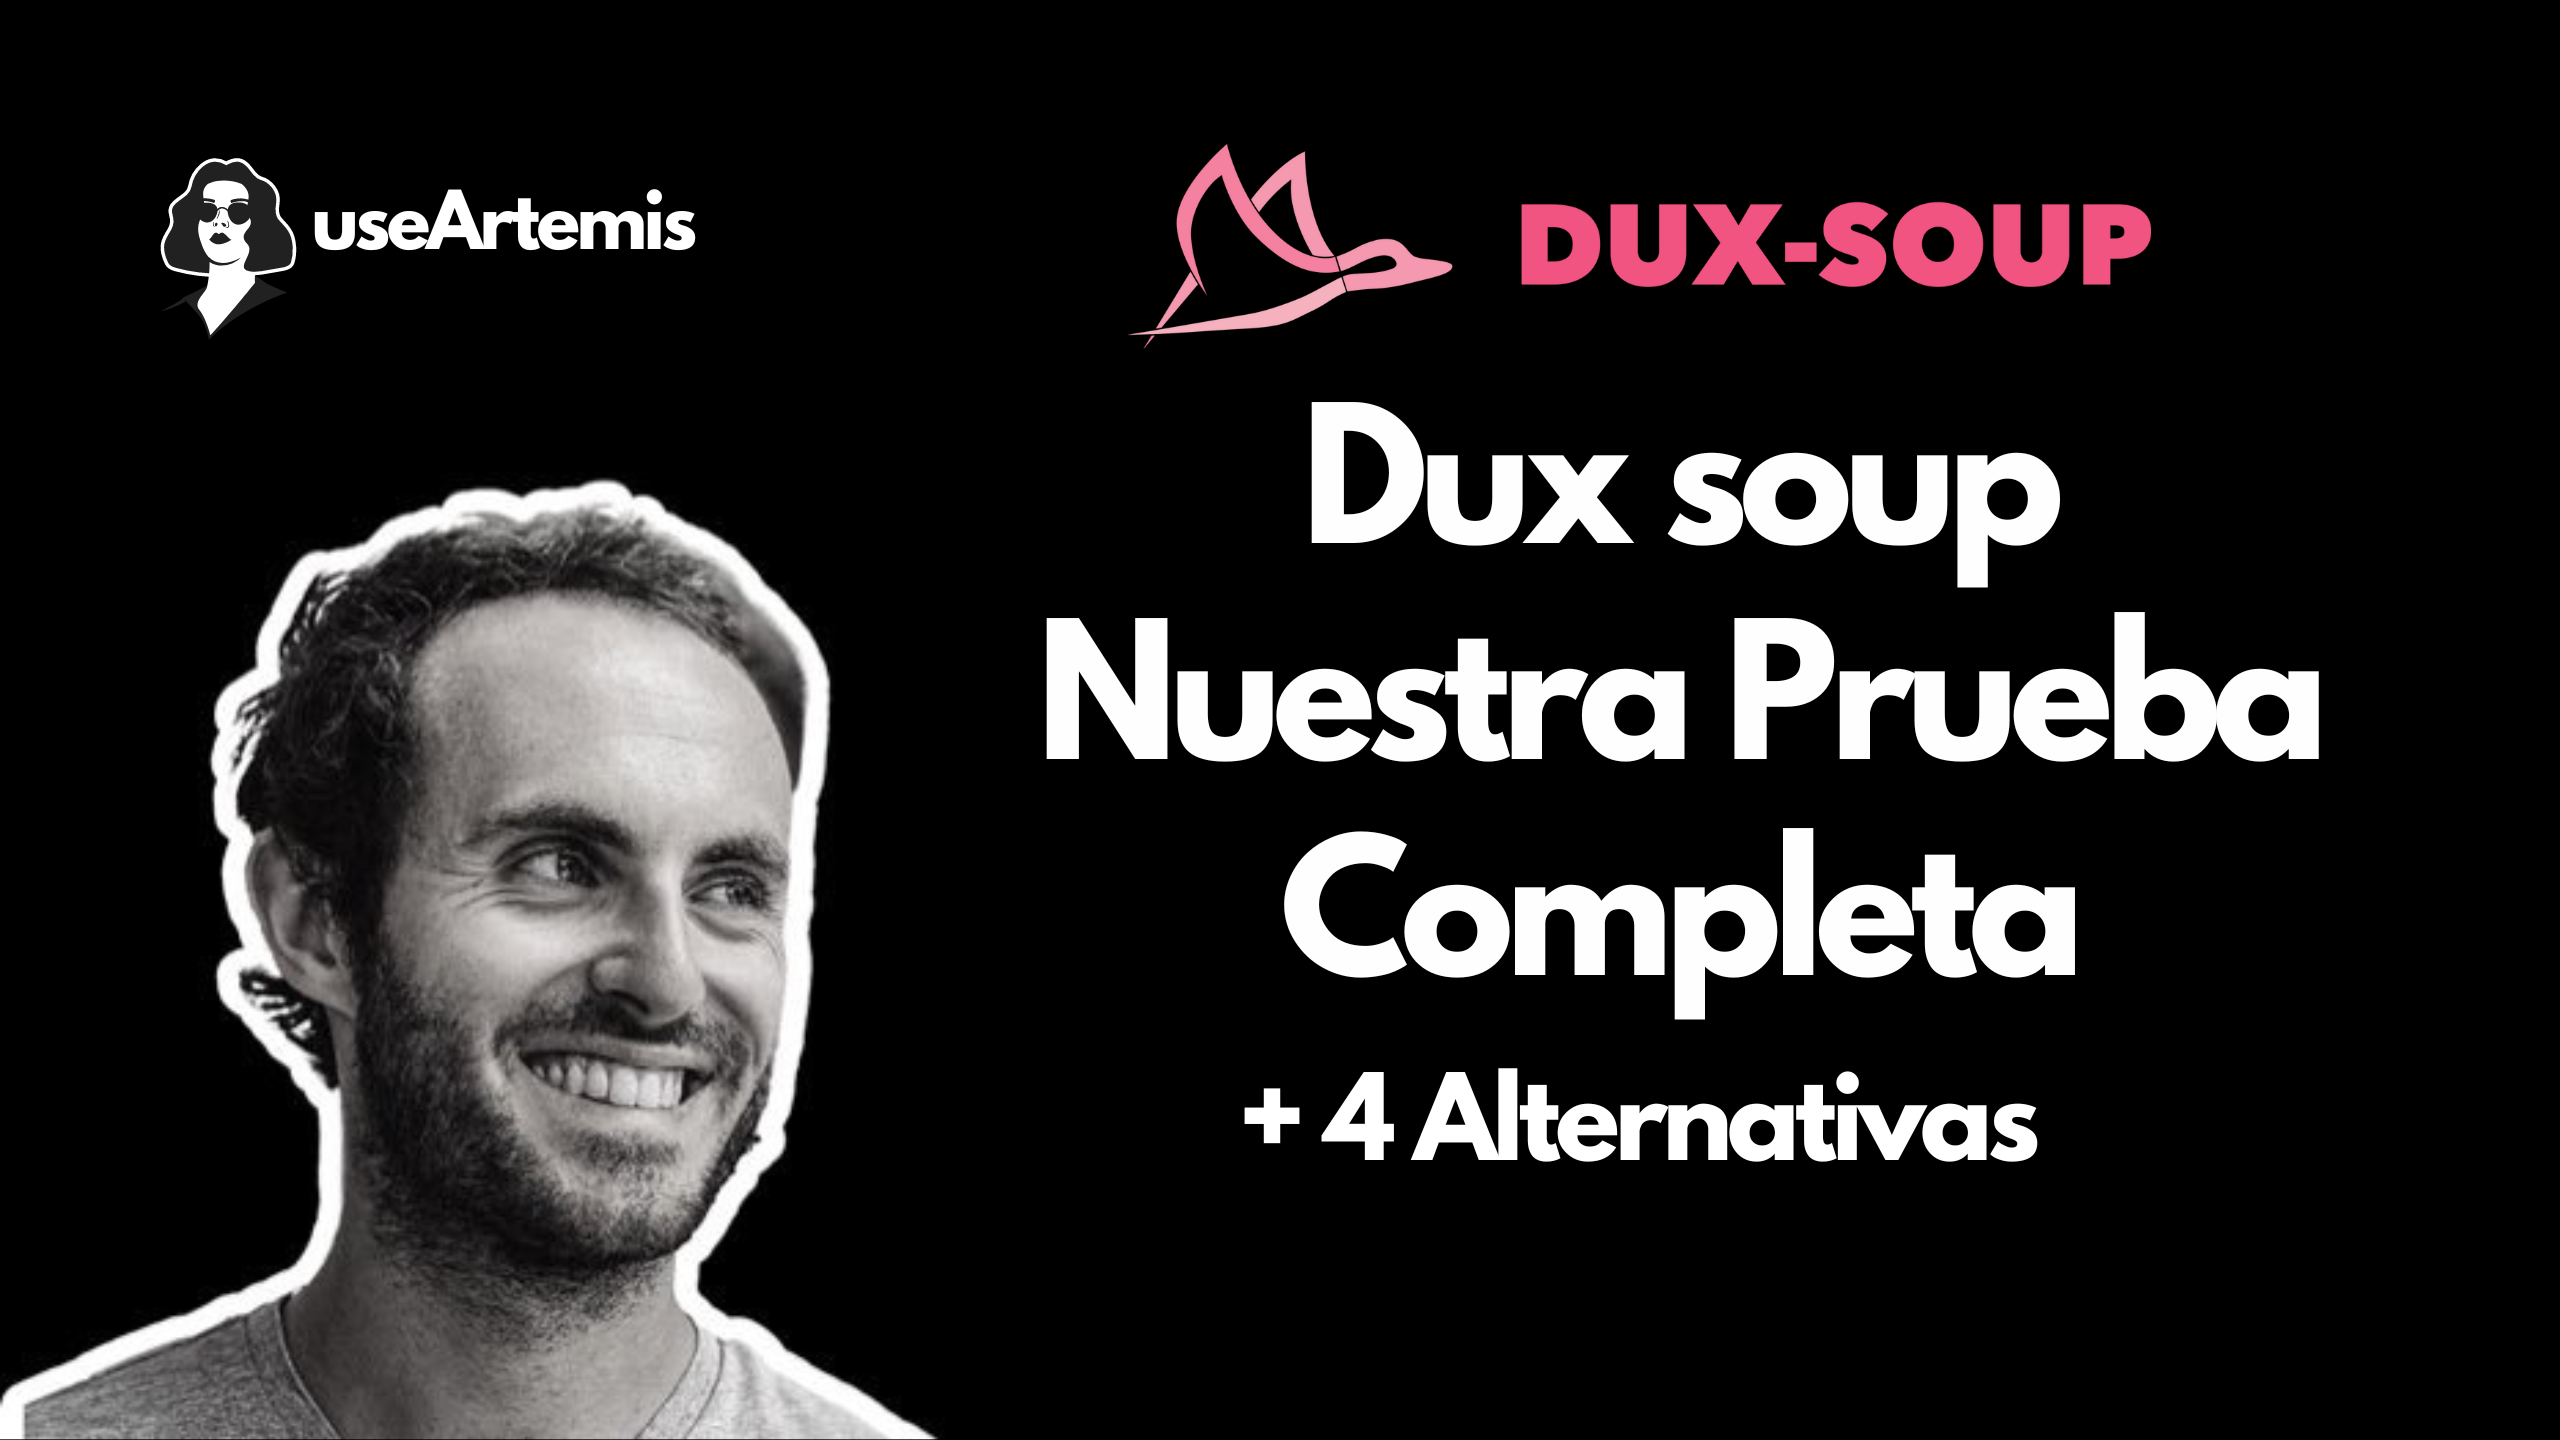 Dux soup: Nuestra Prueba Completa